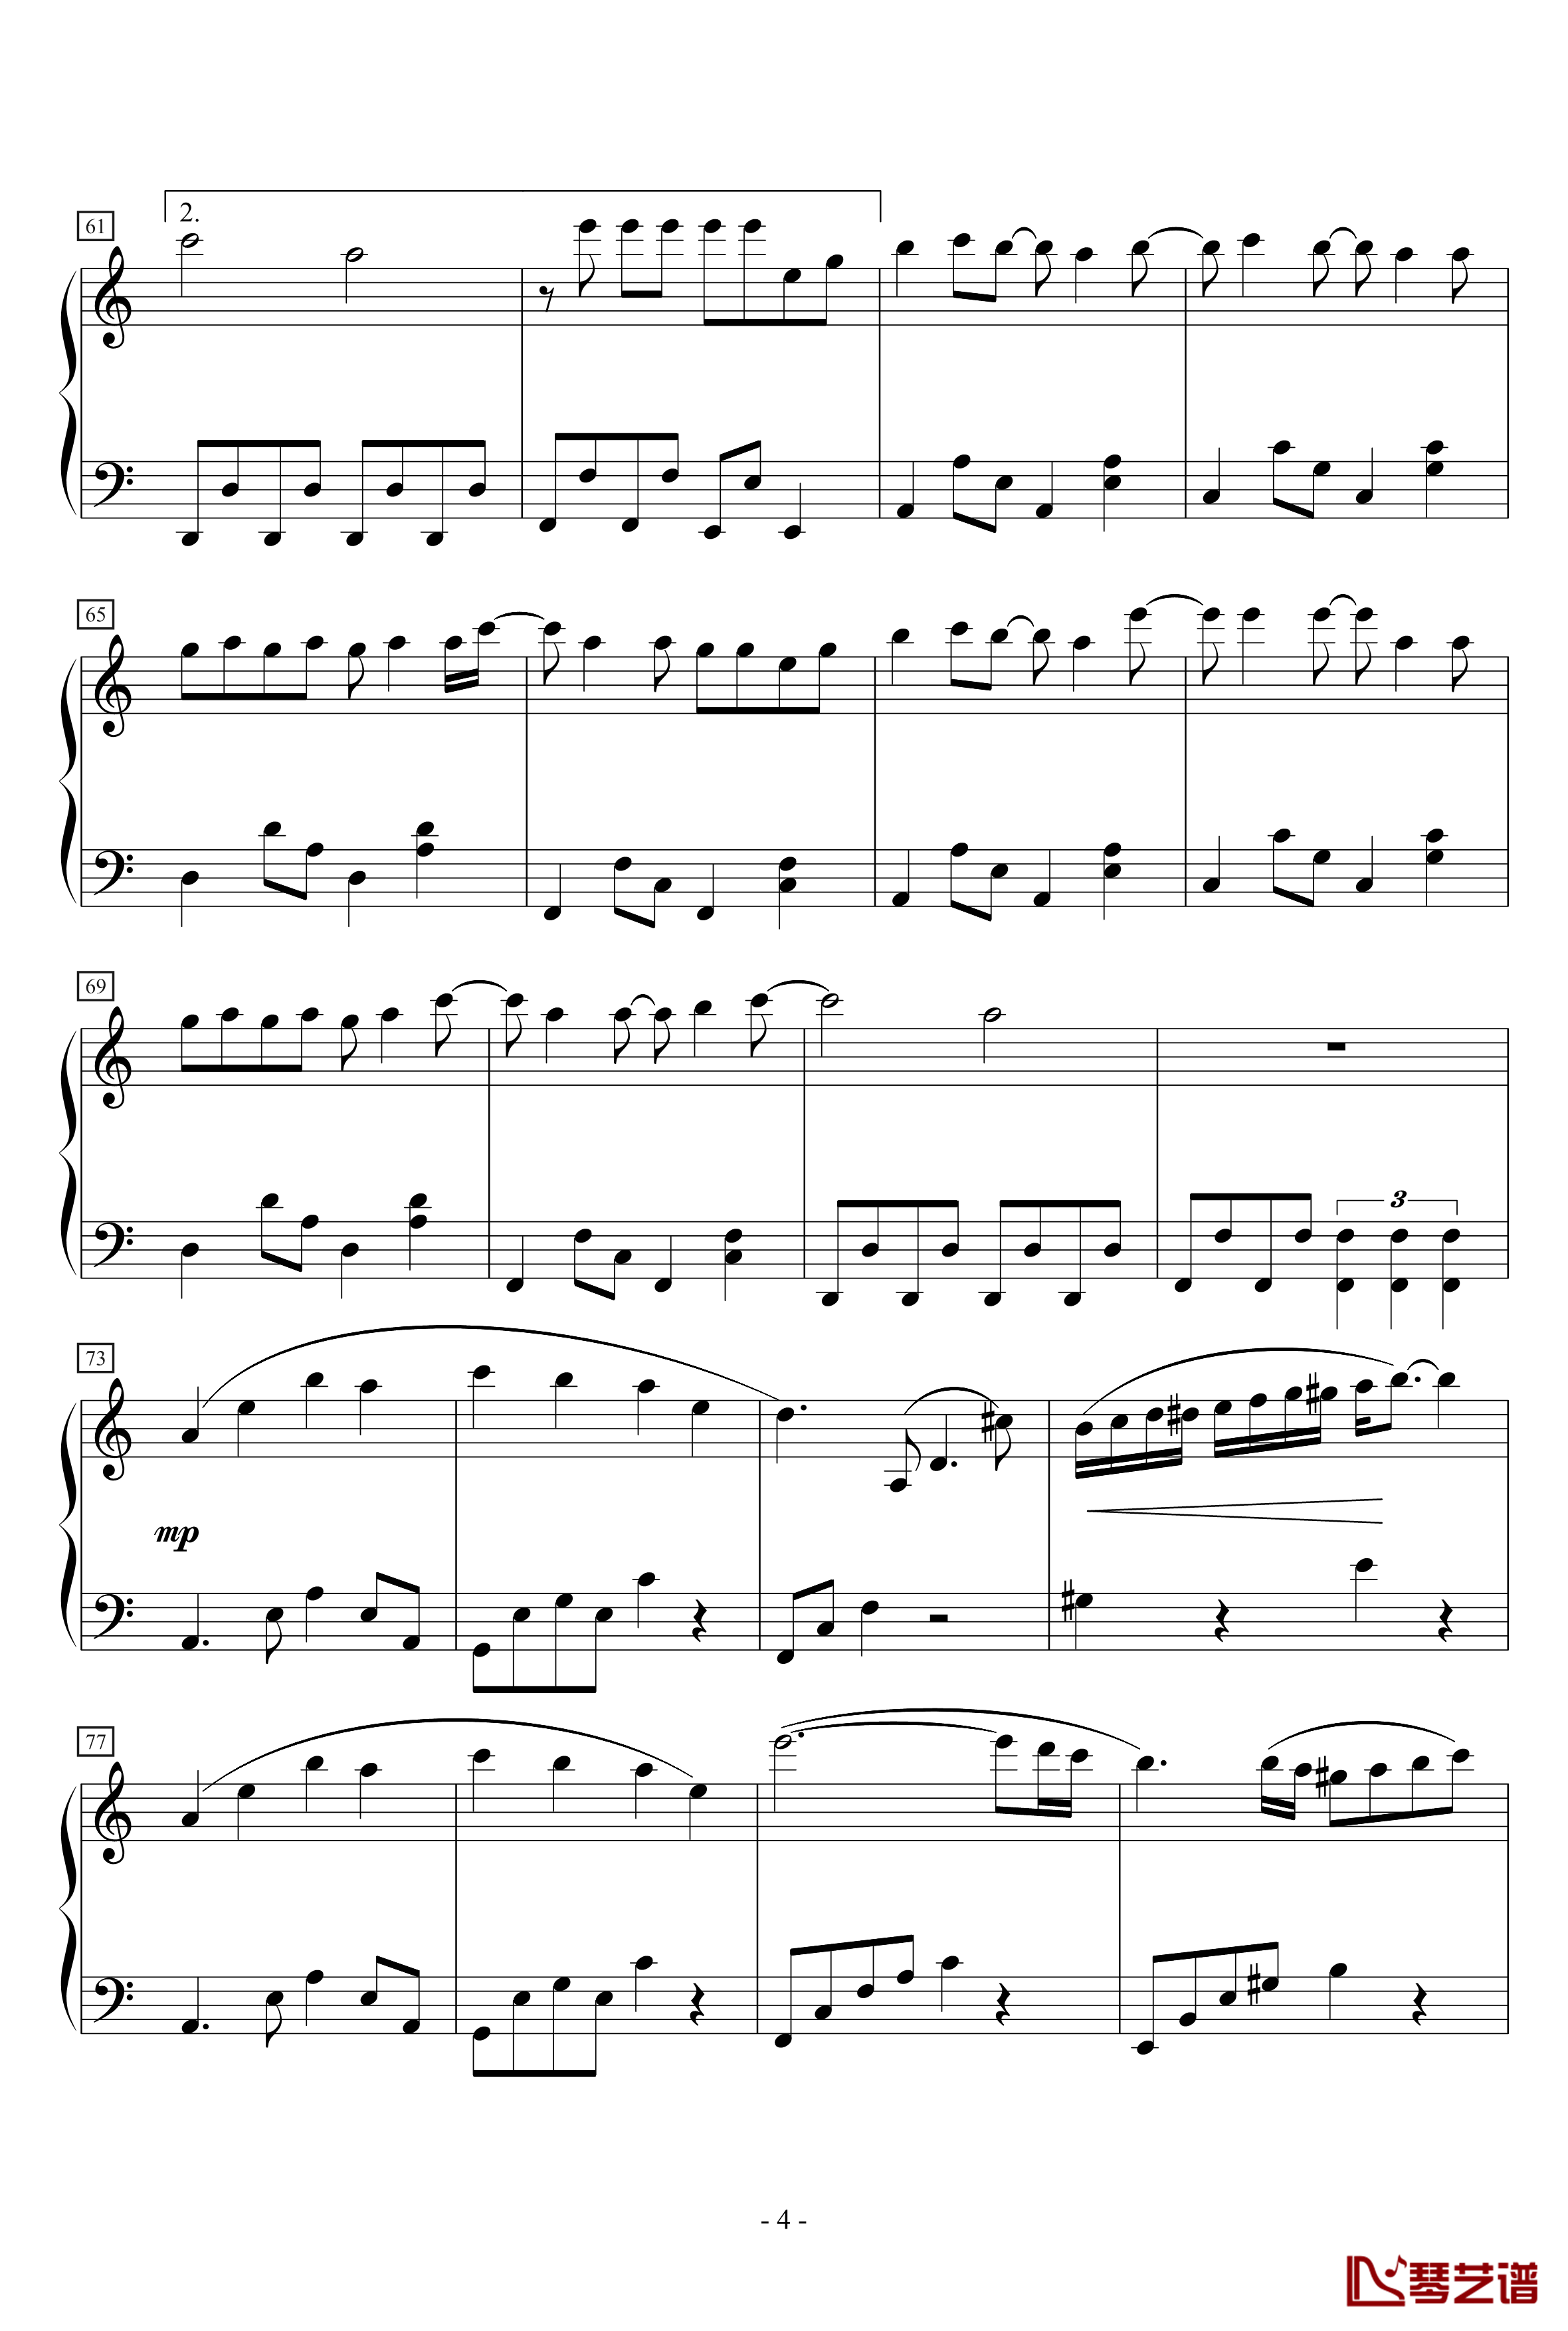 天机钢琴谱-MP魔幻力量4